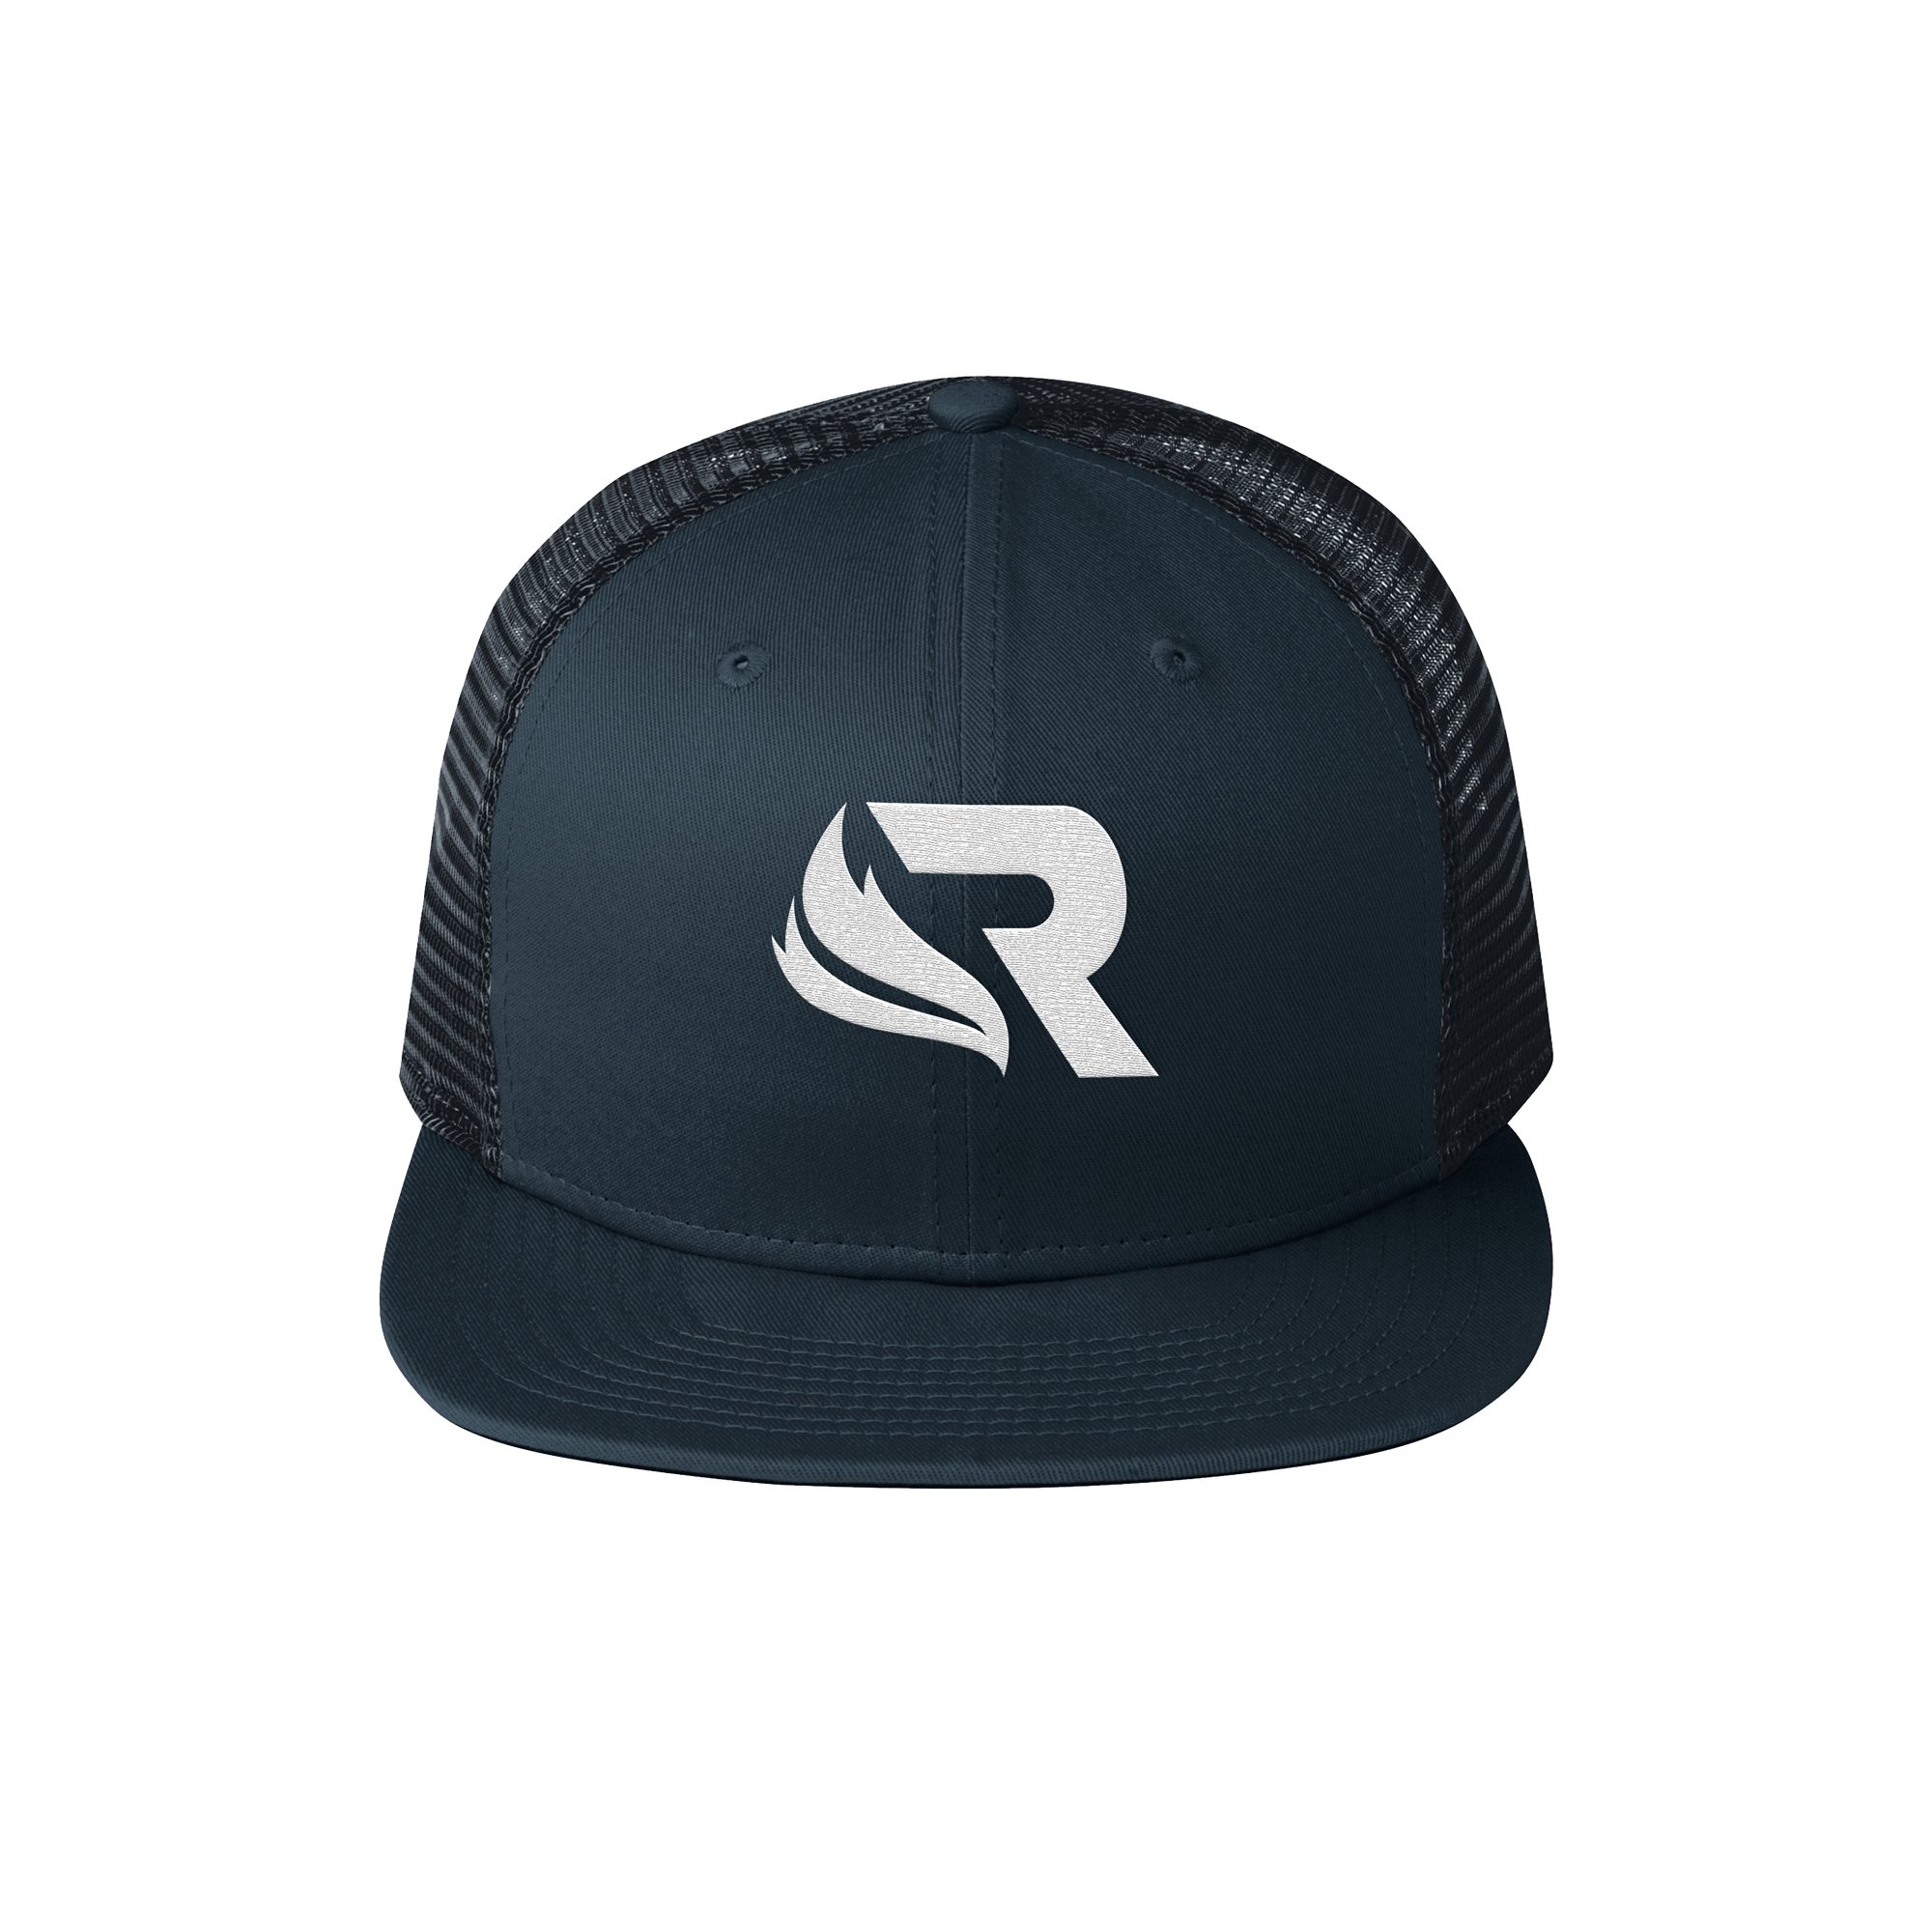 Revival Rev 3 New Era Logo Snapback